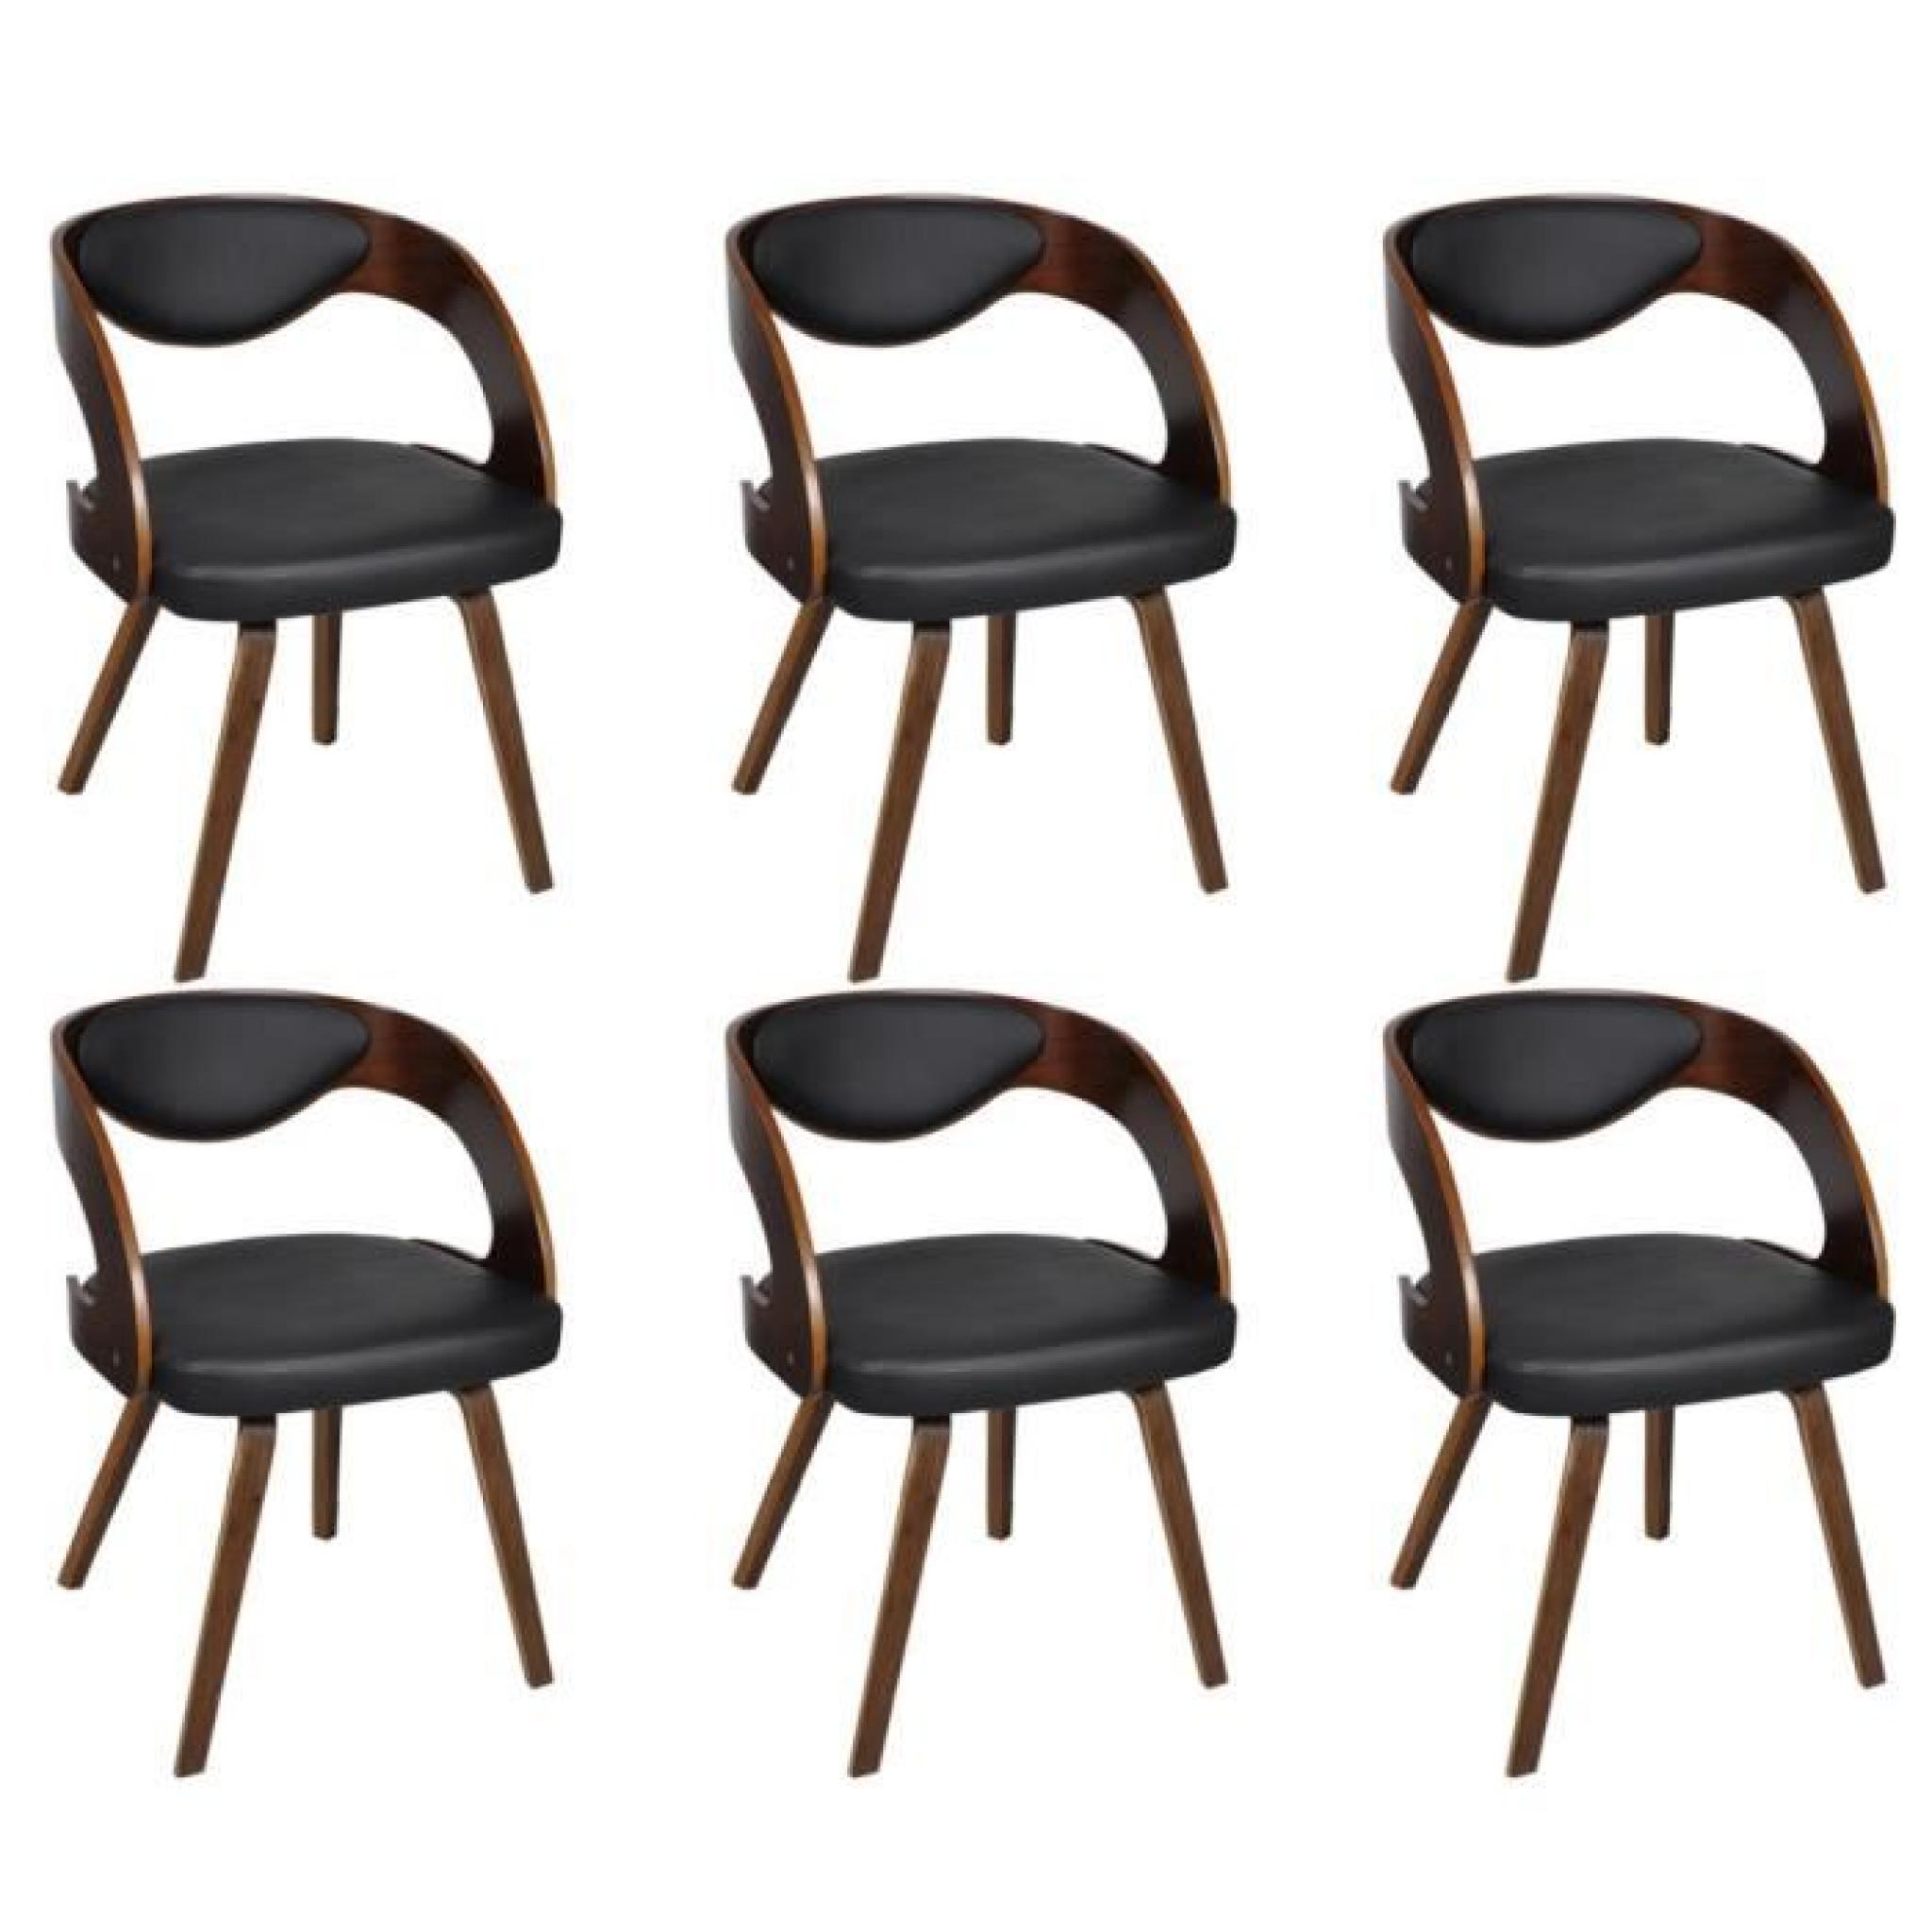 Magnifique Lot de 6 chaises a accoudoirs en cuir melange et bois Brun